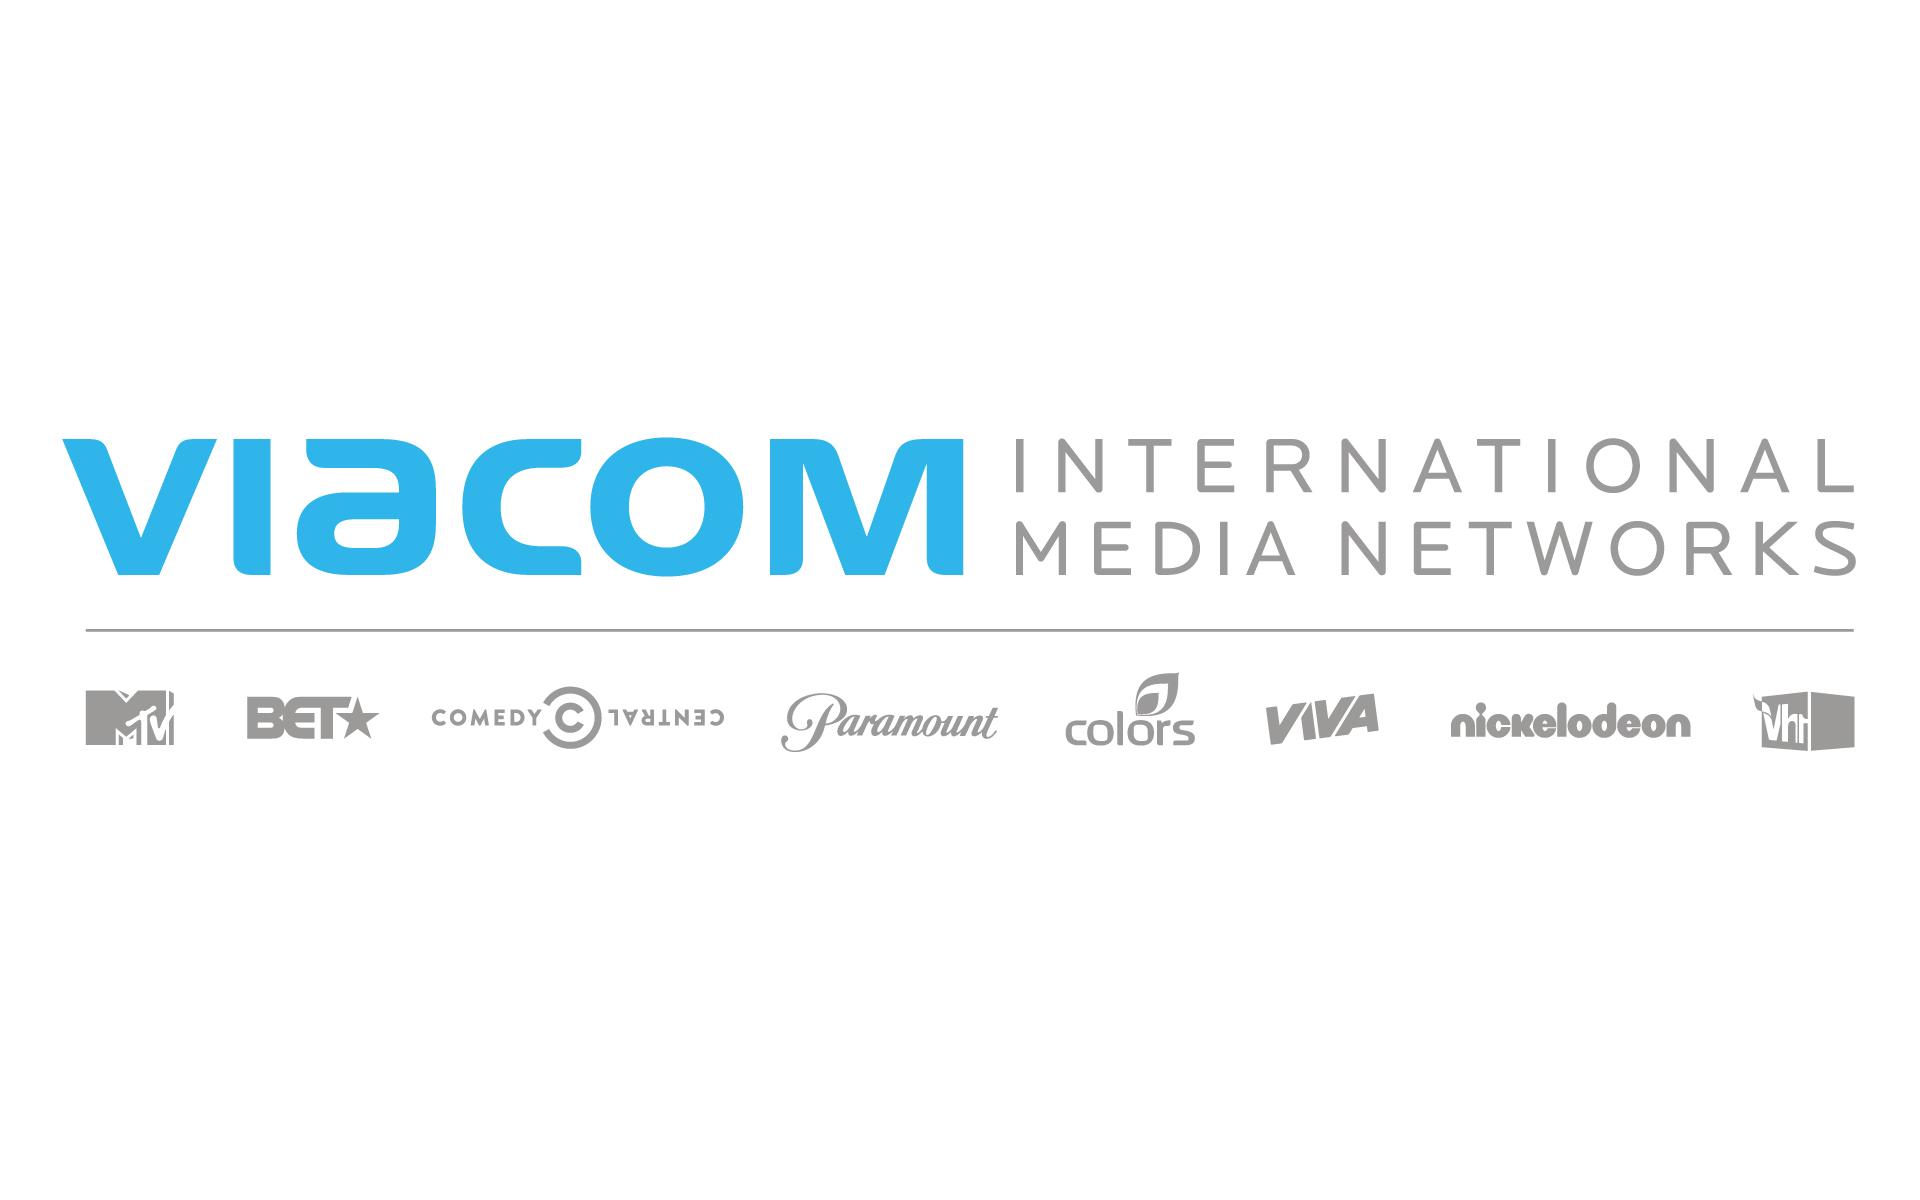 Medium int. Viacom. Viacom International. Viacom Media Networks. Viacom International logo.